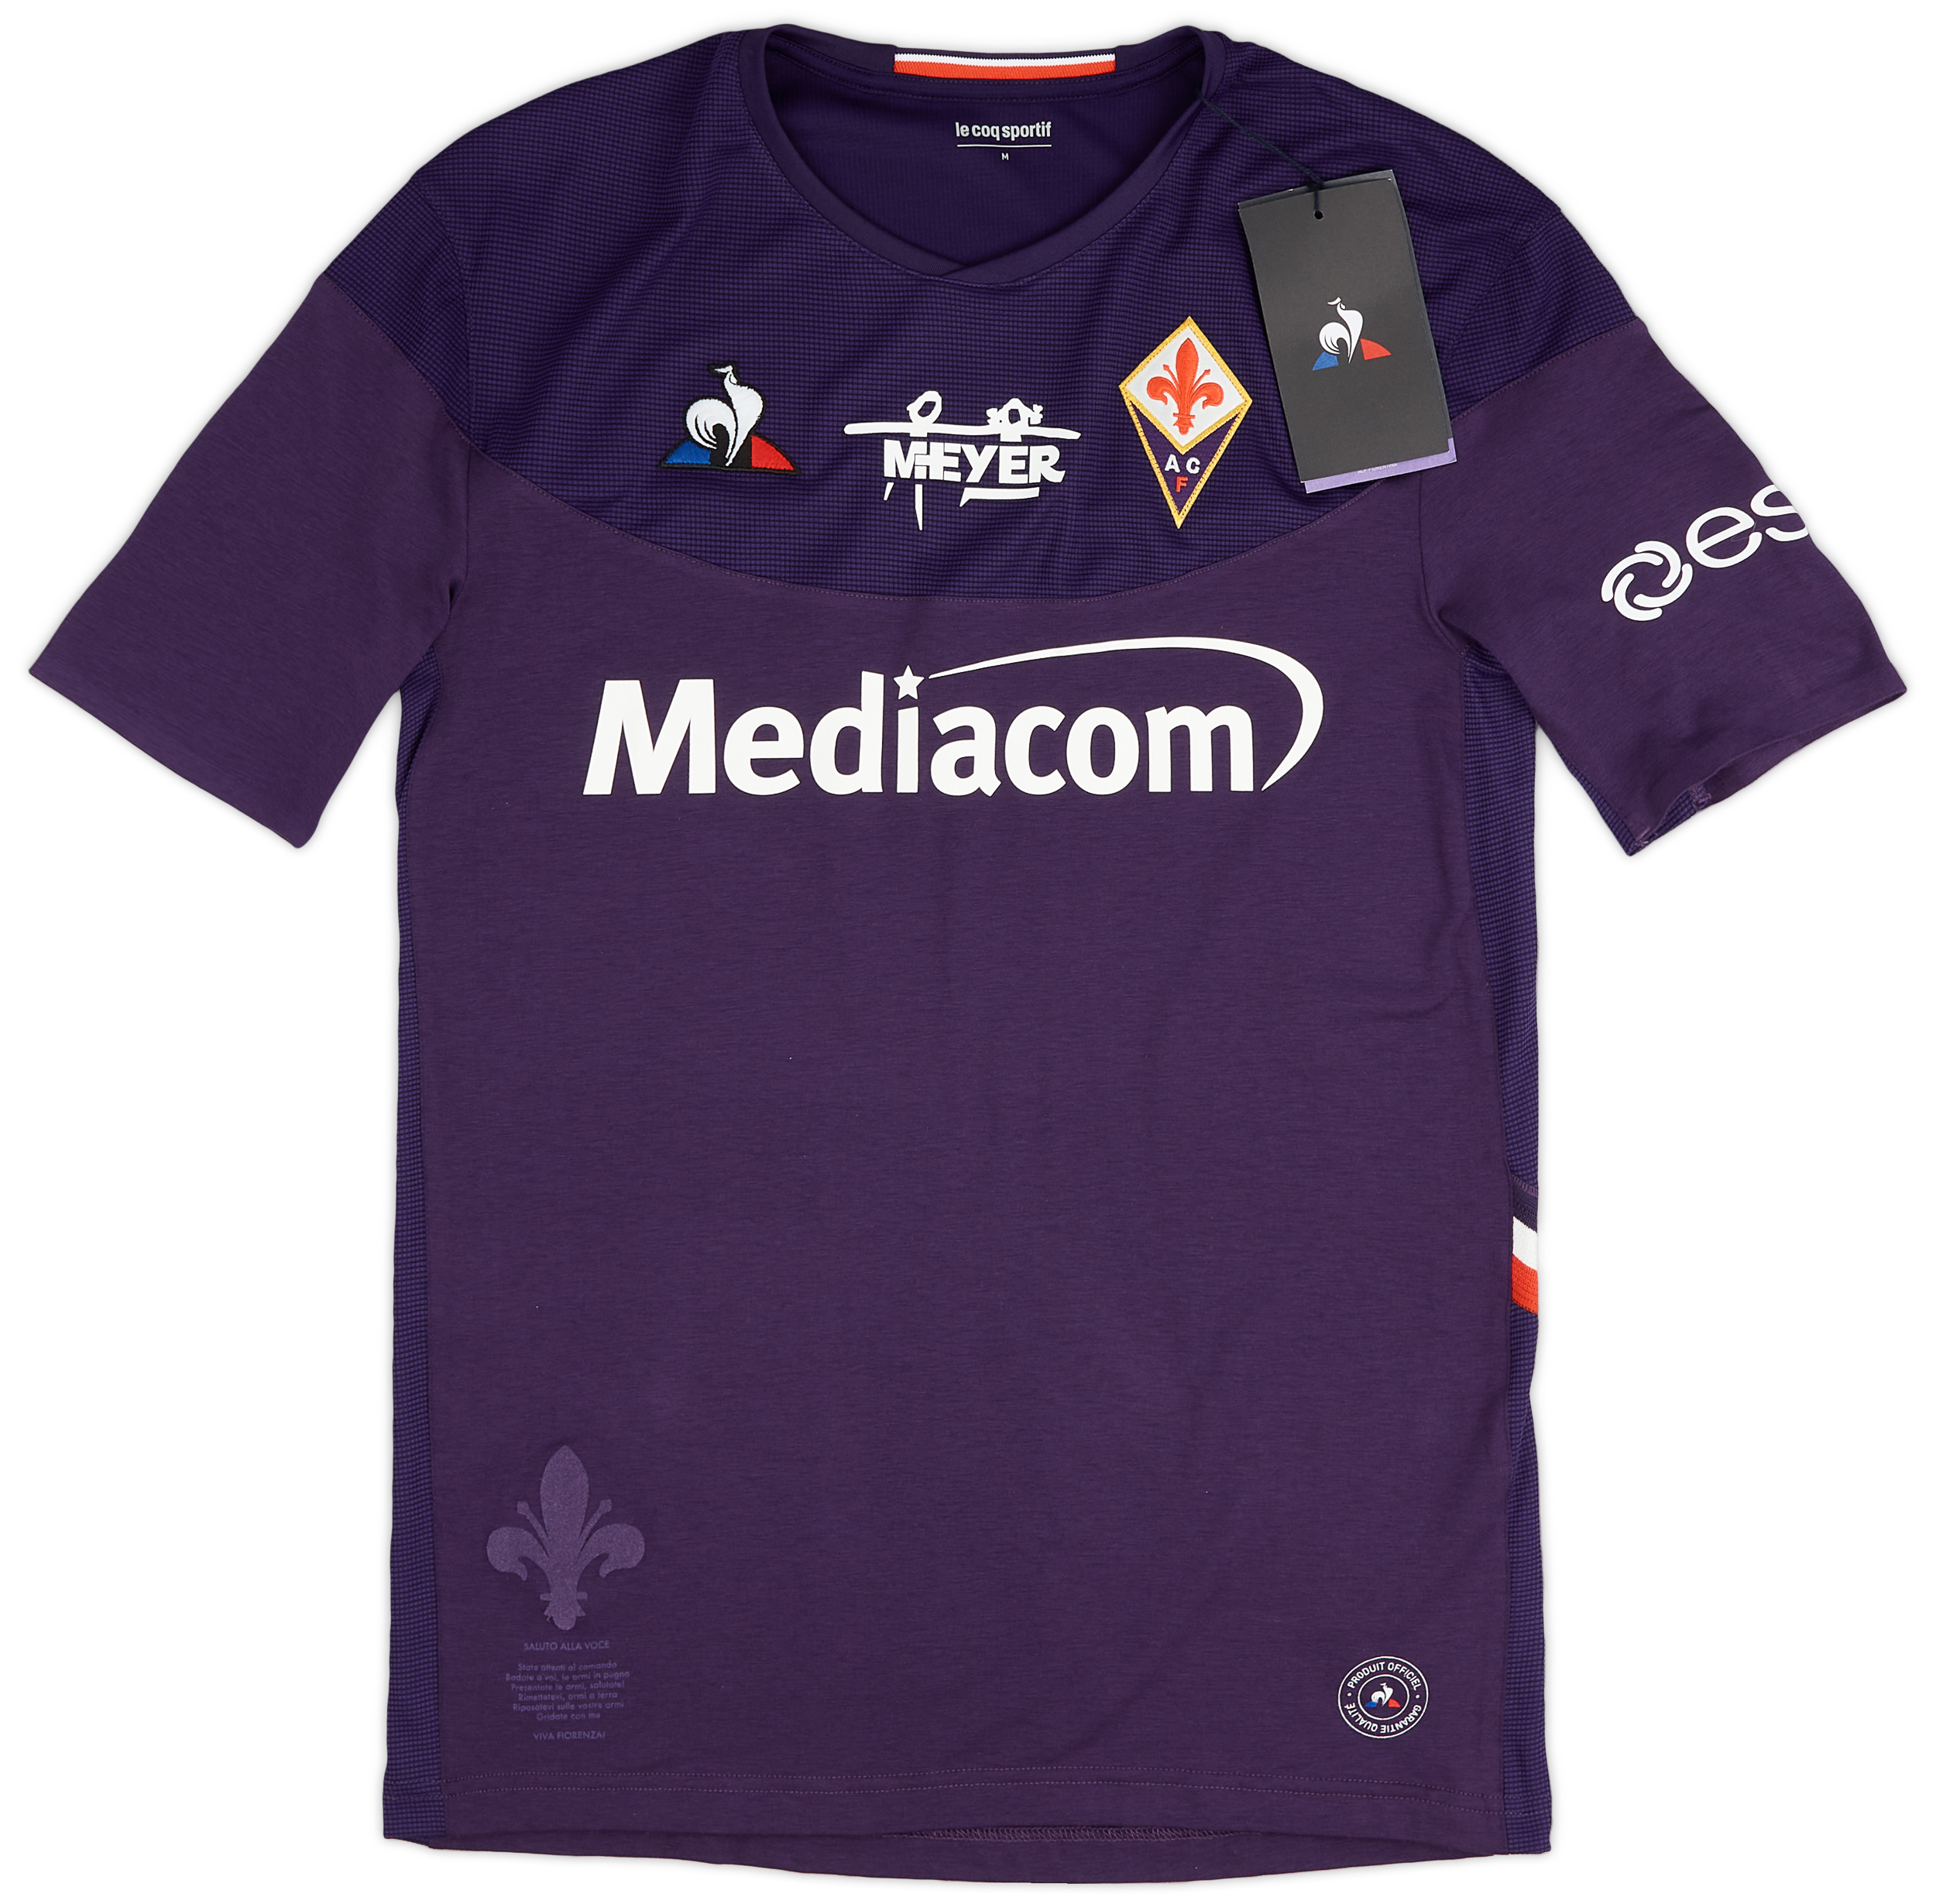 Fiorentina  home baju (Original)